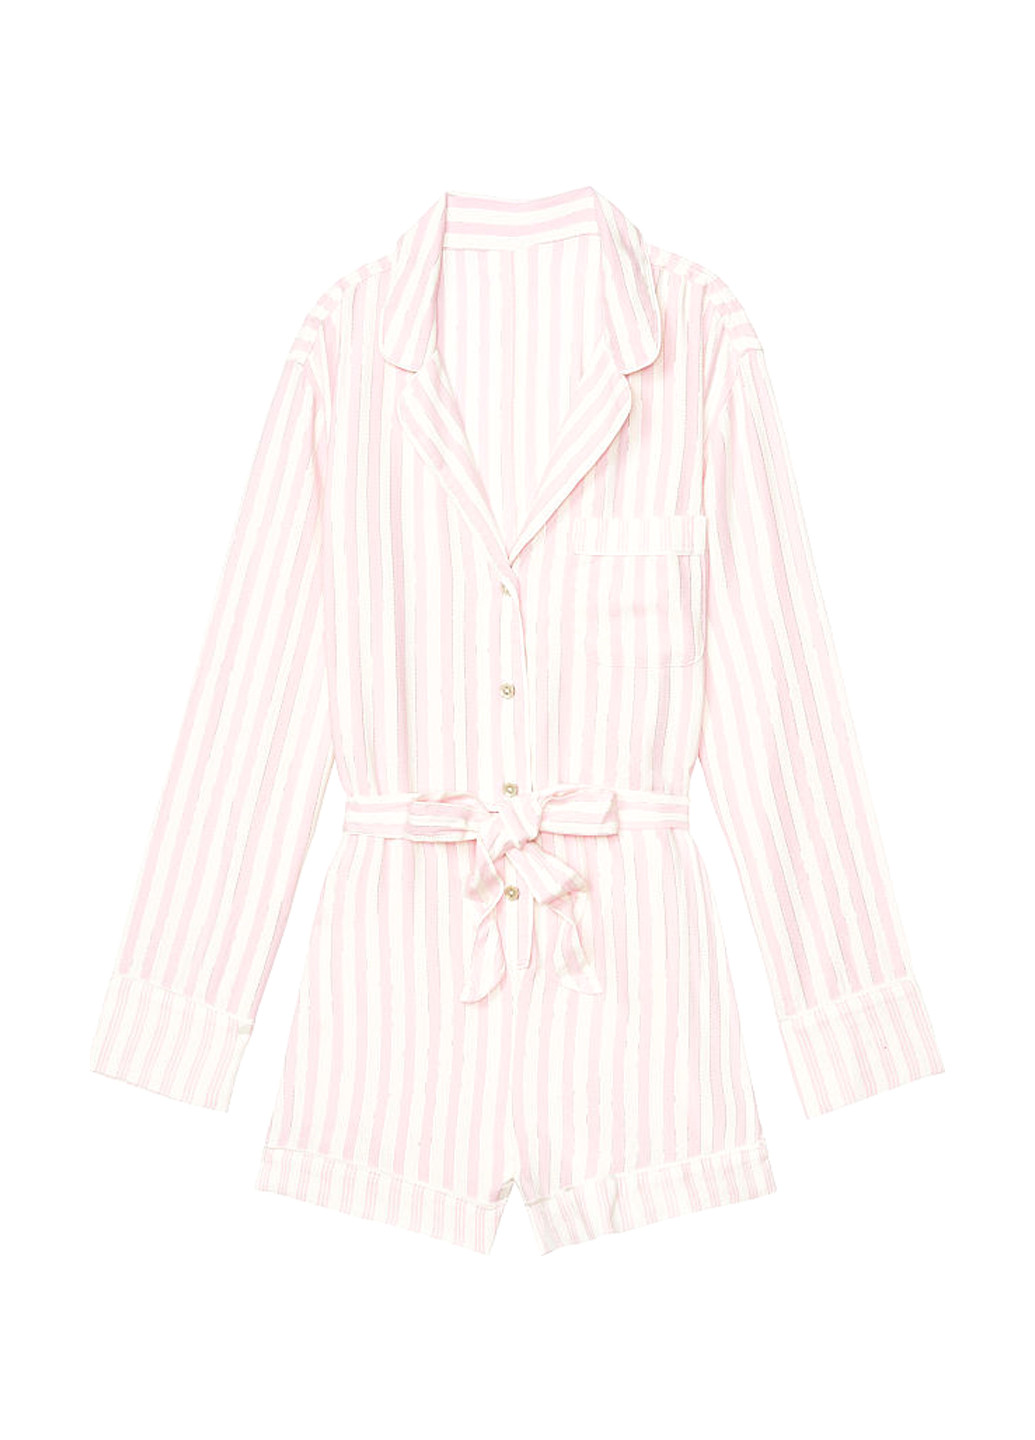 Комбинезон Victoria's Secret комбинезон-шорты полоска светло-розовый домашний хлопок, фланель